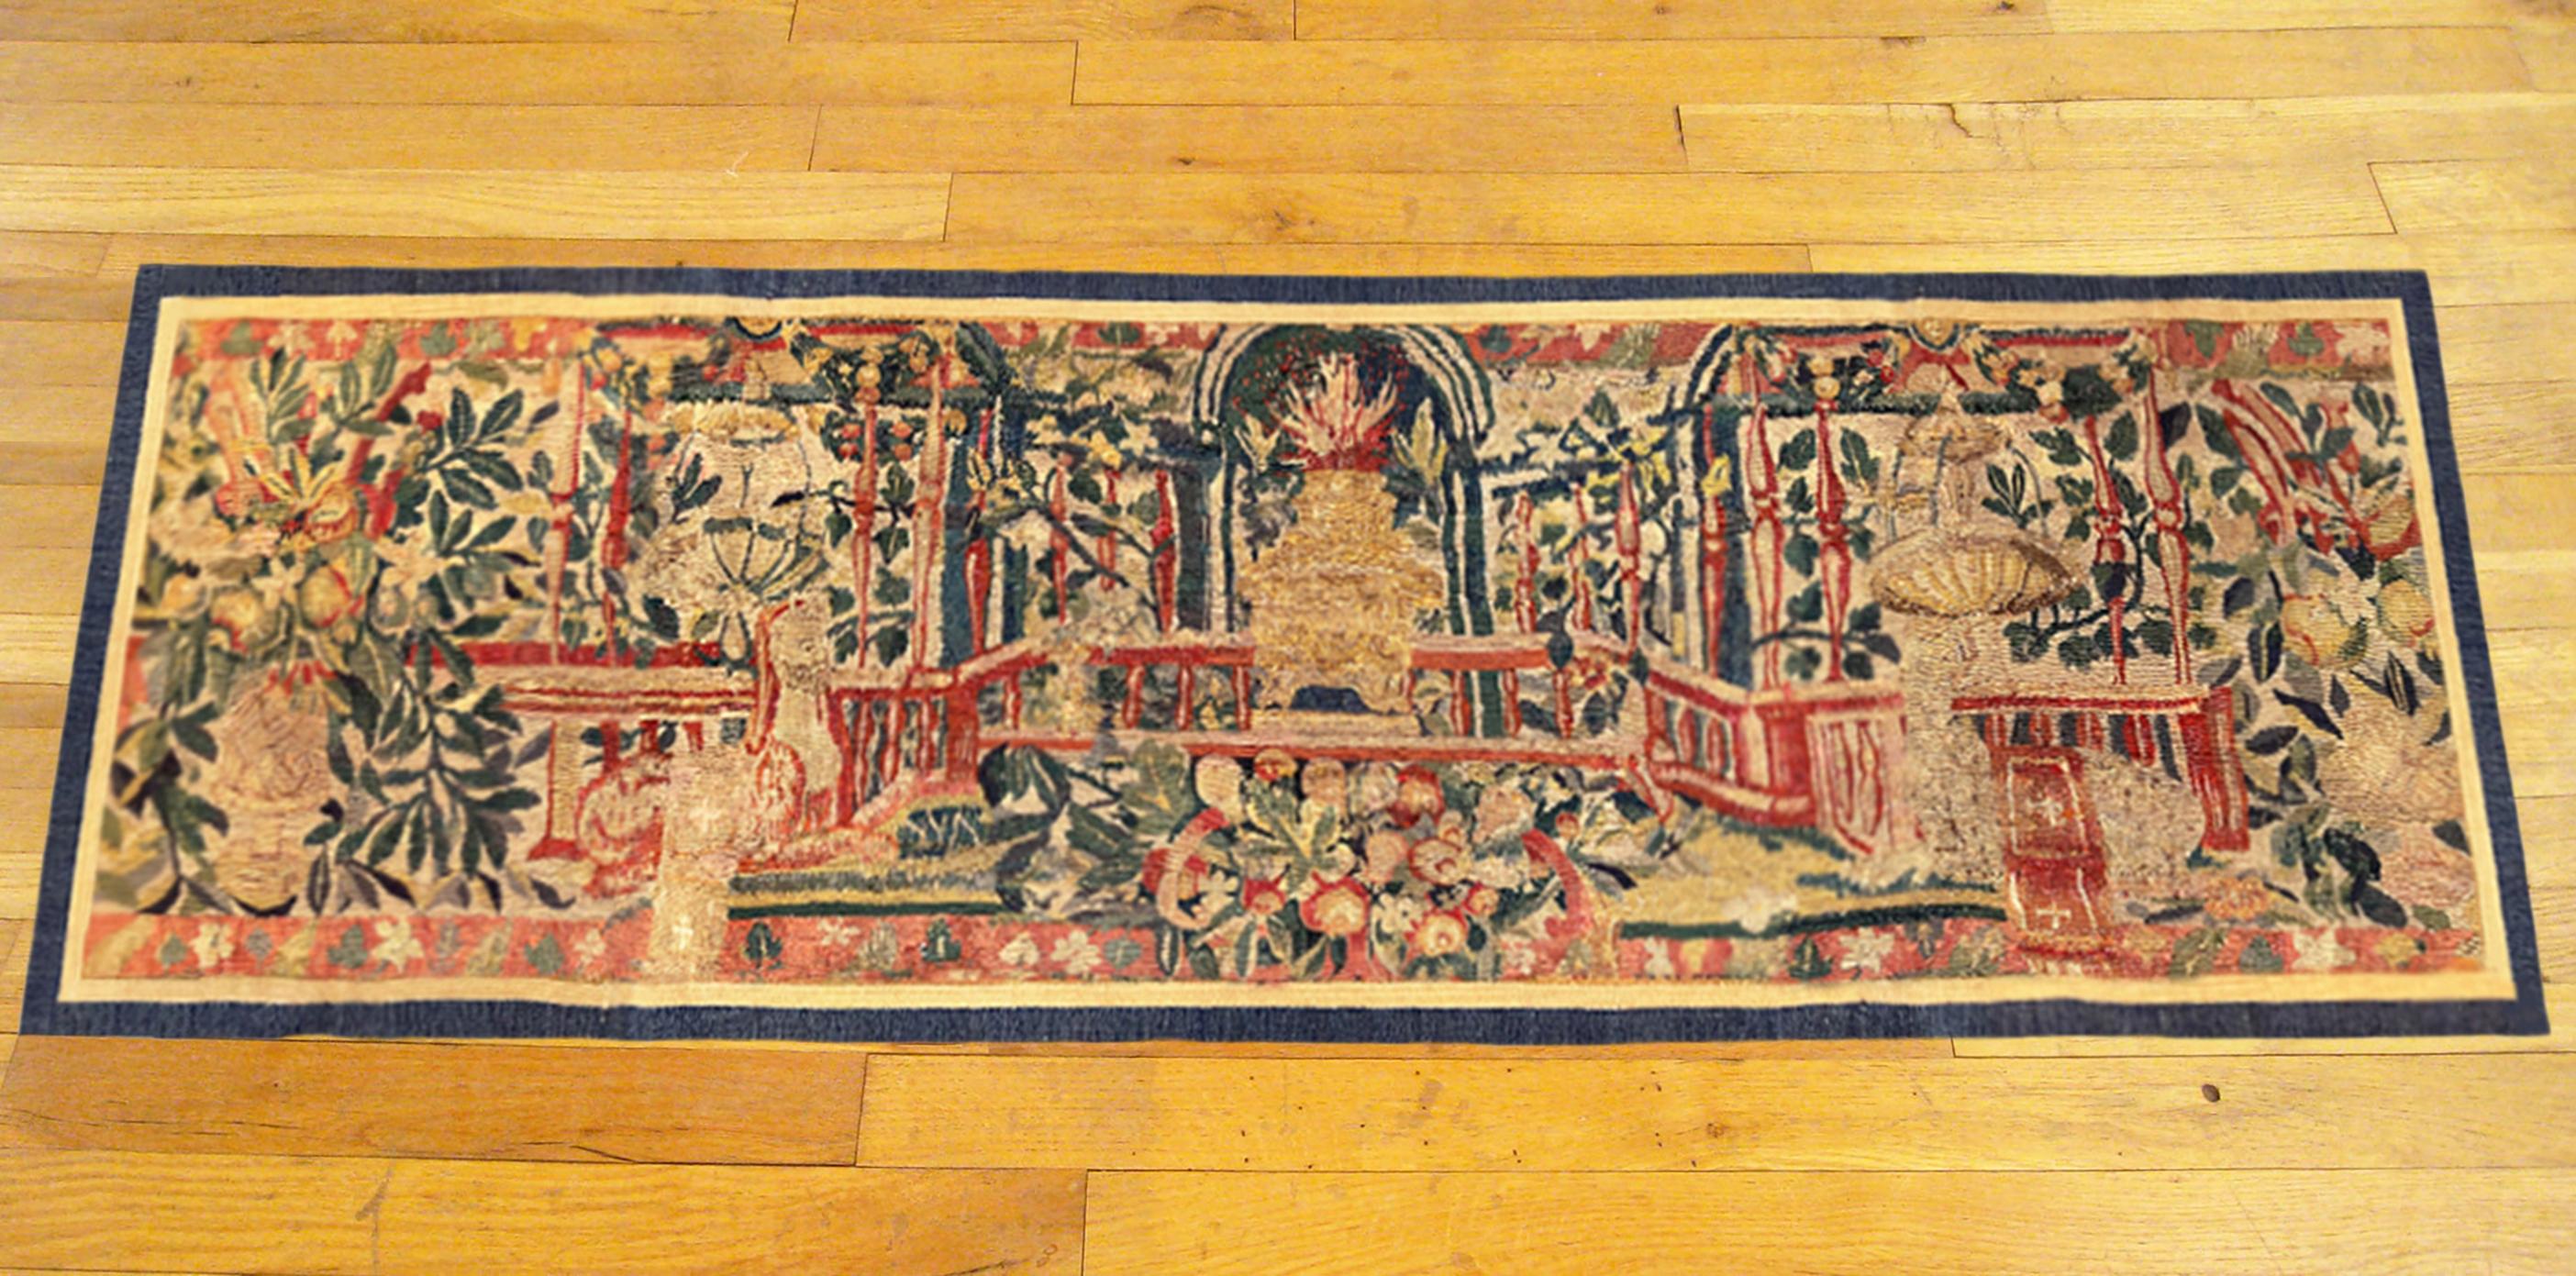 Eine historische flämische Wandteppichplatte aus dem späten 16. Dieses horizontal ausgerichtete dekorative Wandteppich-Paneel zeigt in der Mitte eine stilisierte Treppe mit Blumen und Blättern sowie Laternen und anderen Elementen. Der zentrale